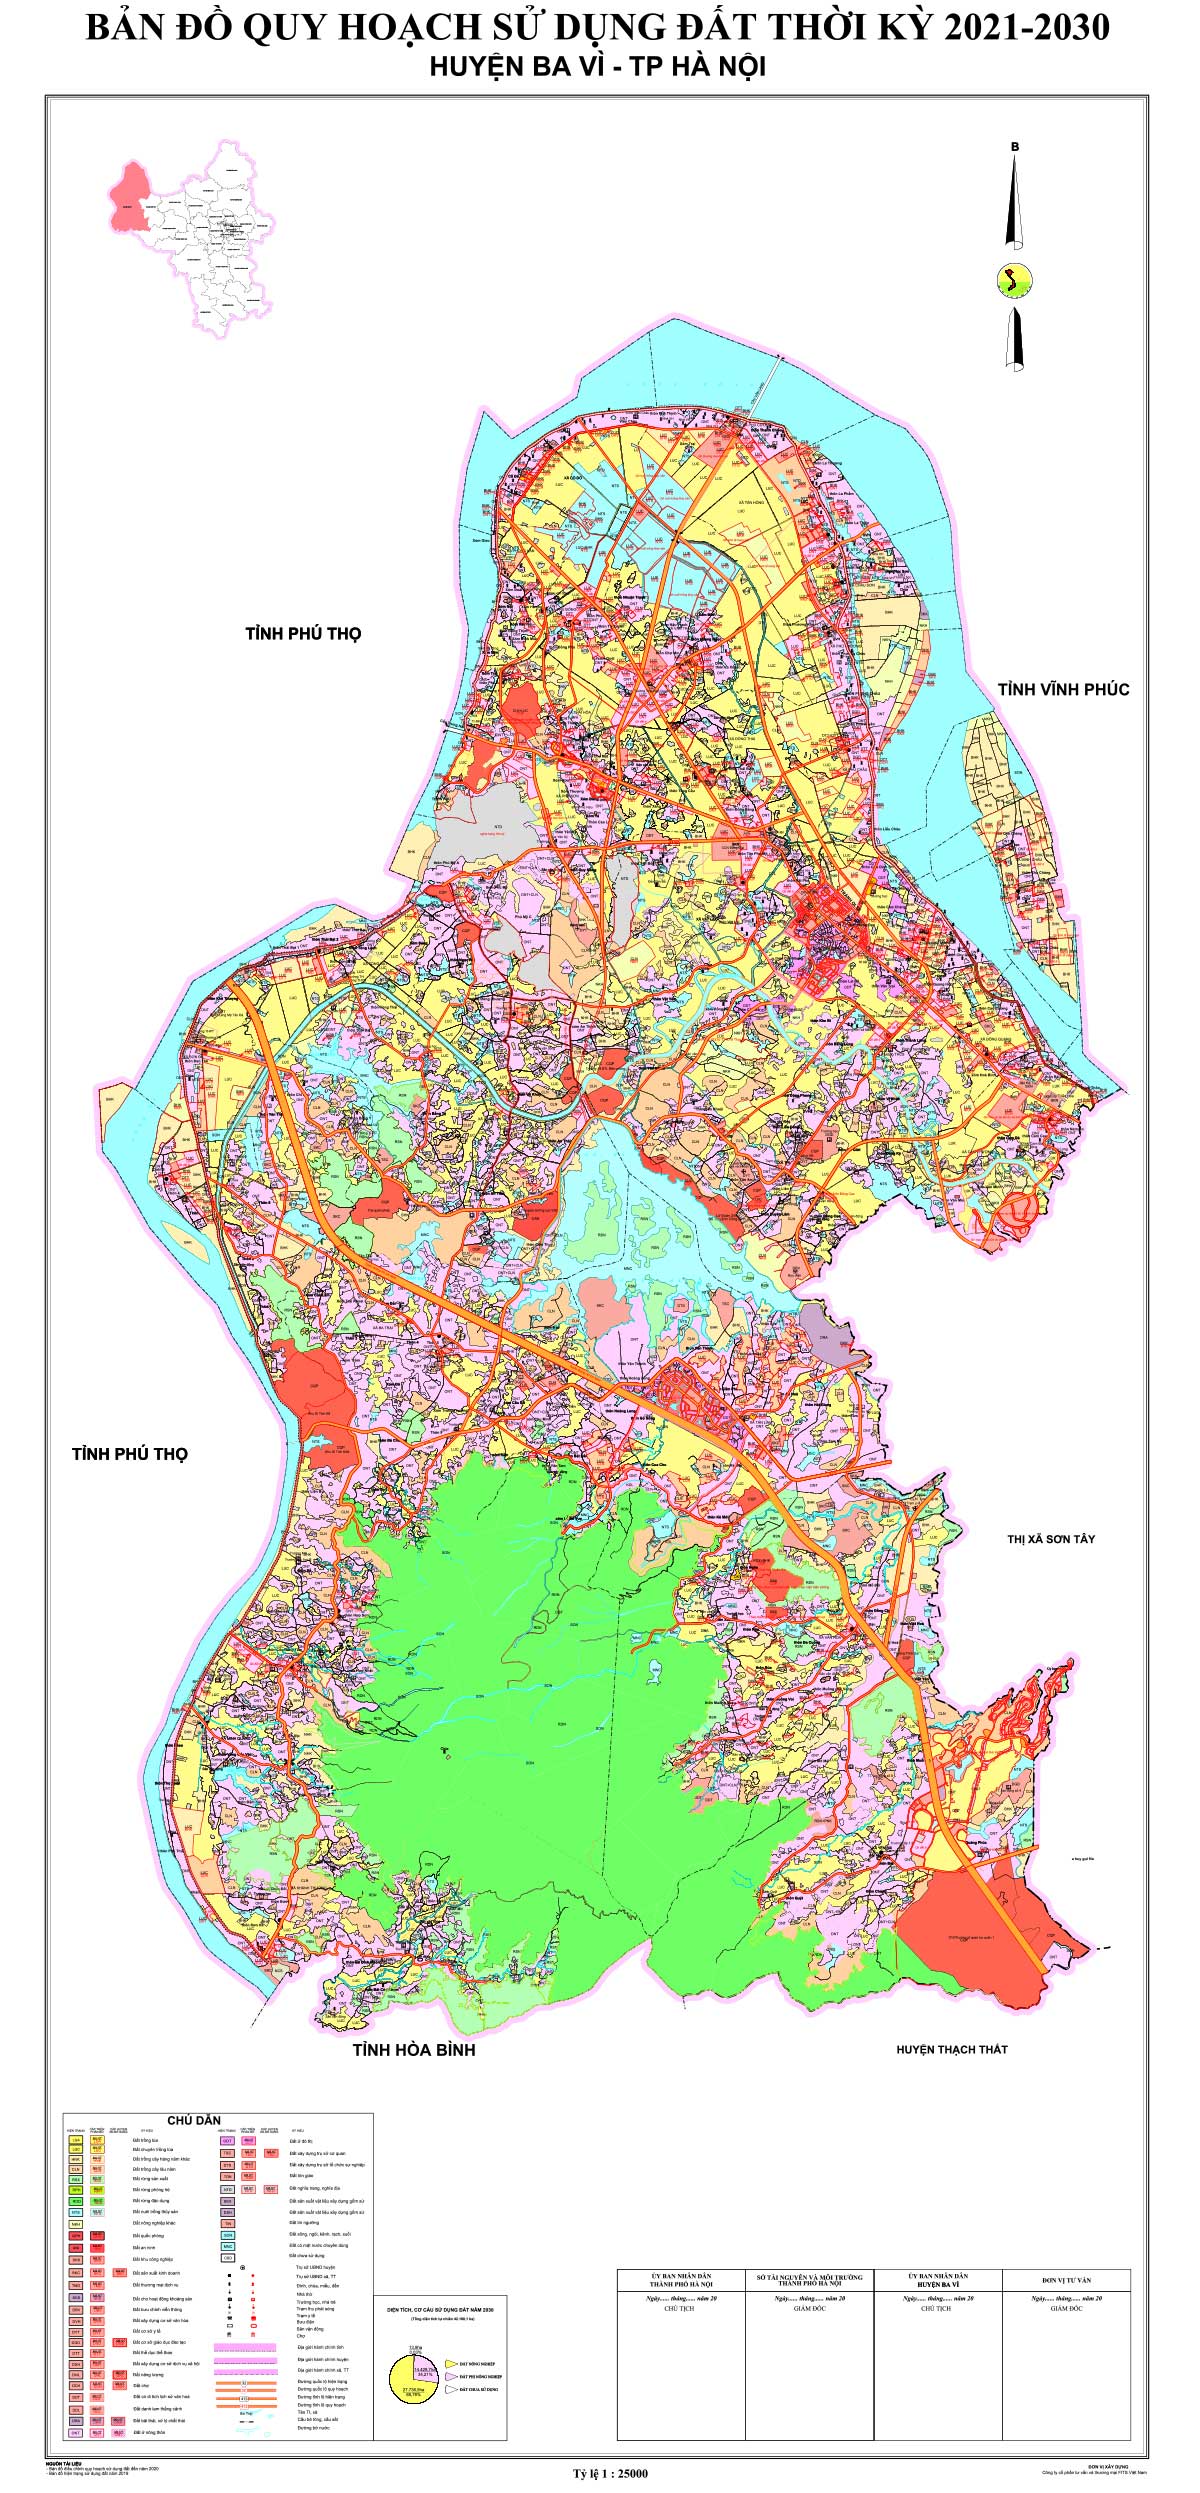 Bản đồ QHSDĐ huyện Ba Vì đến 2030